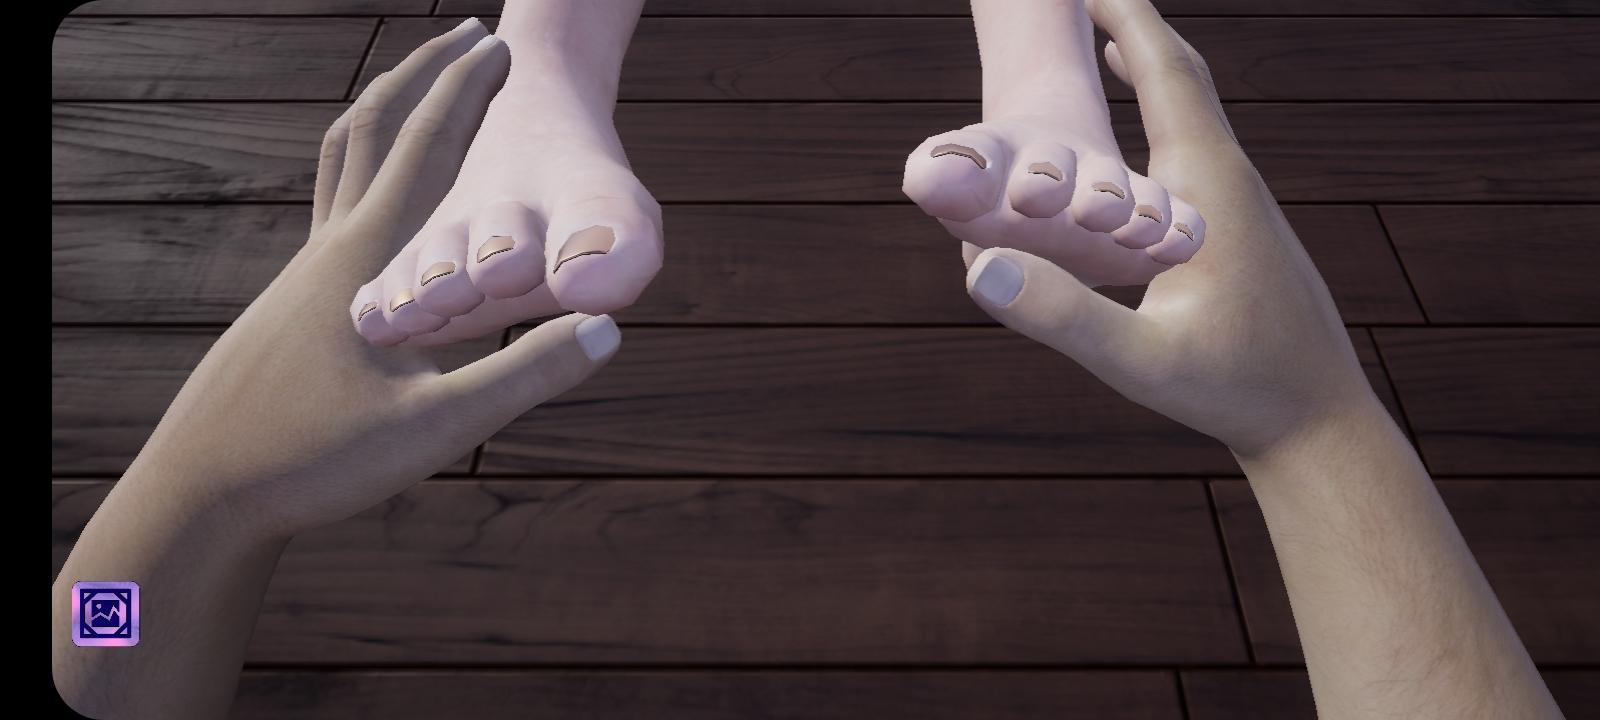 Girlfriends feet. Girlfriend feet игра. Angel foot скрины.